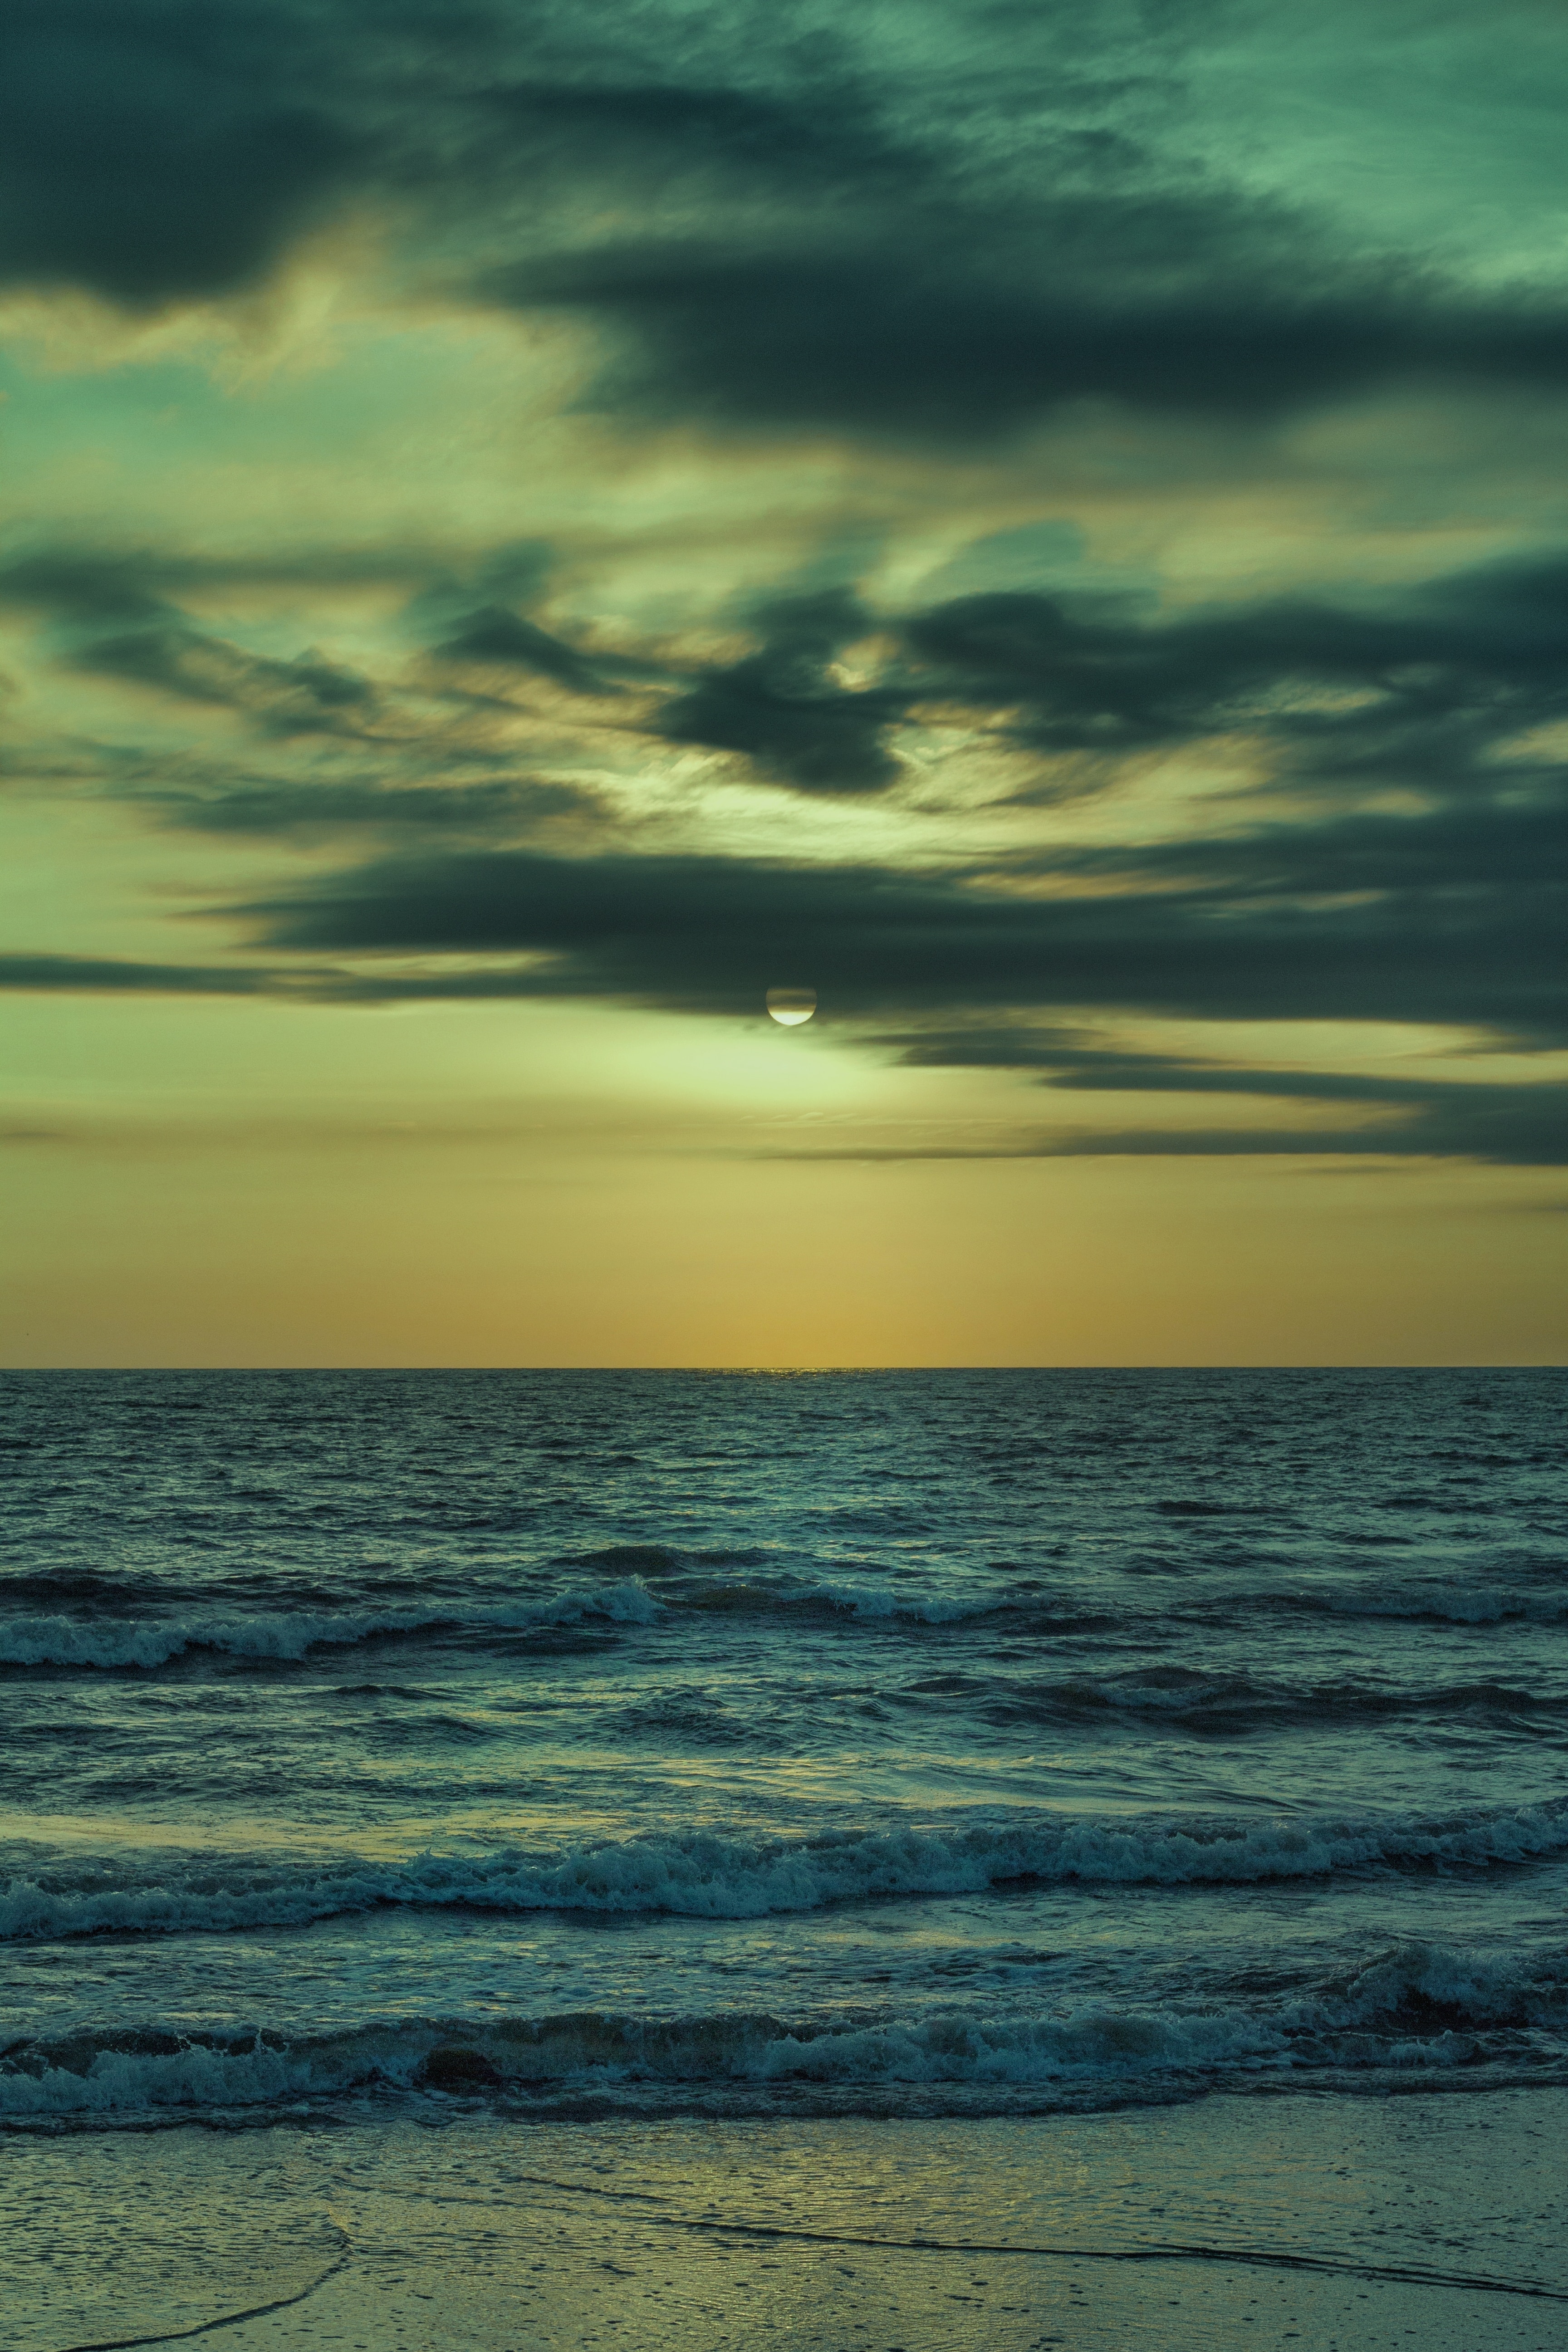 dusk, waves, nature, sea, twilight, clouds, coast UHD